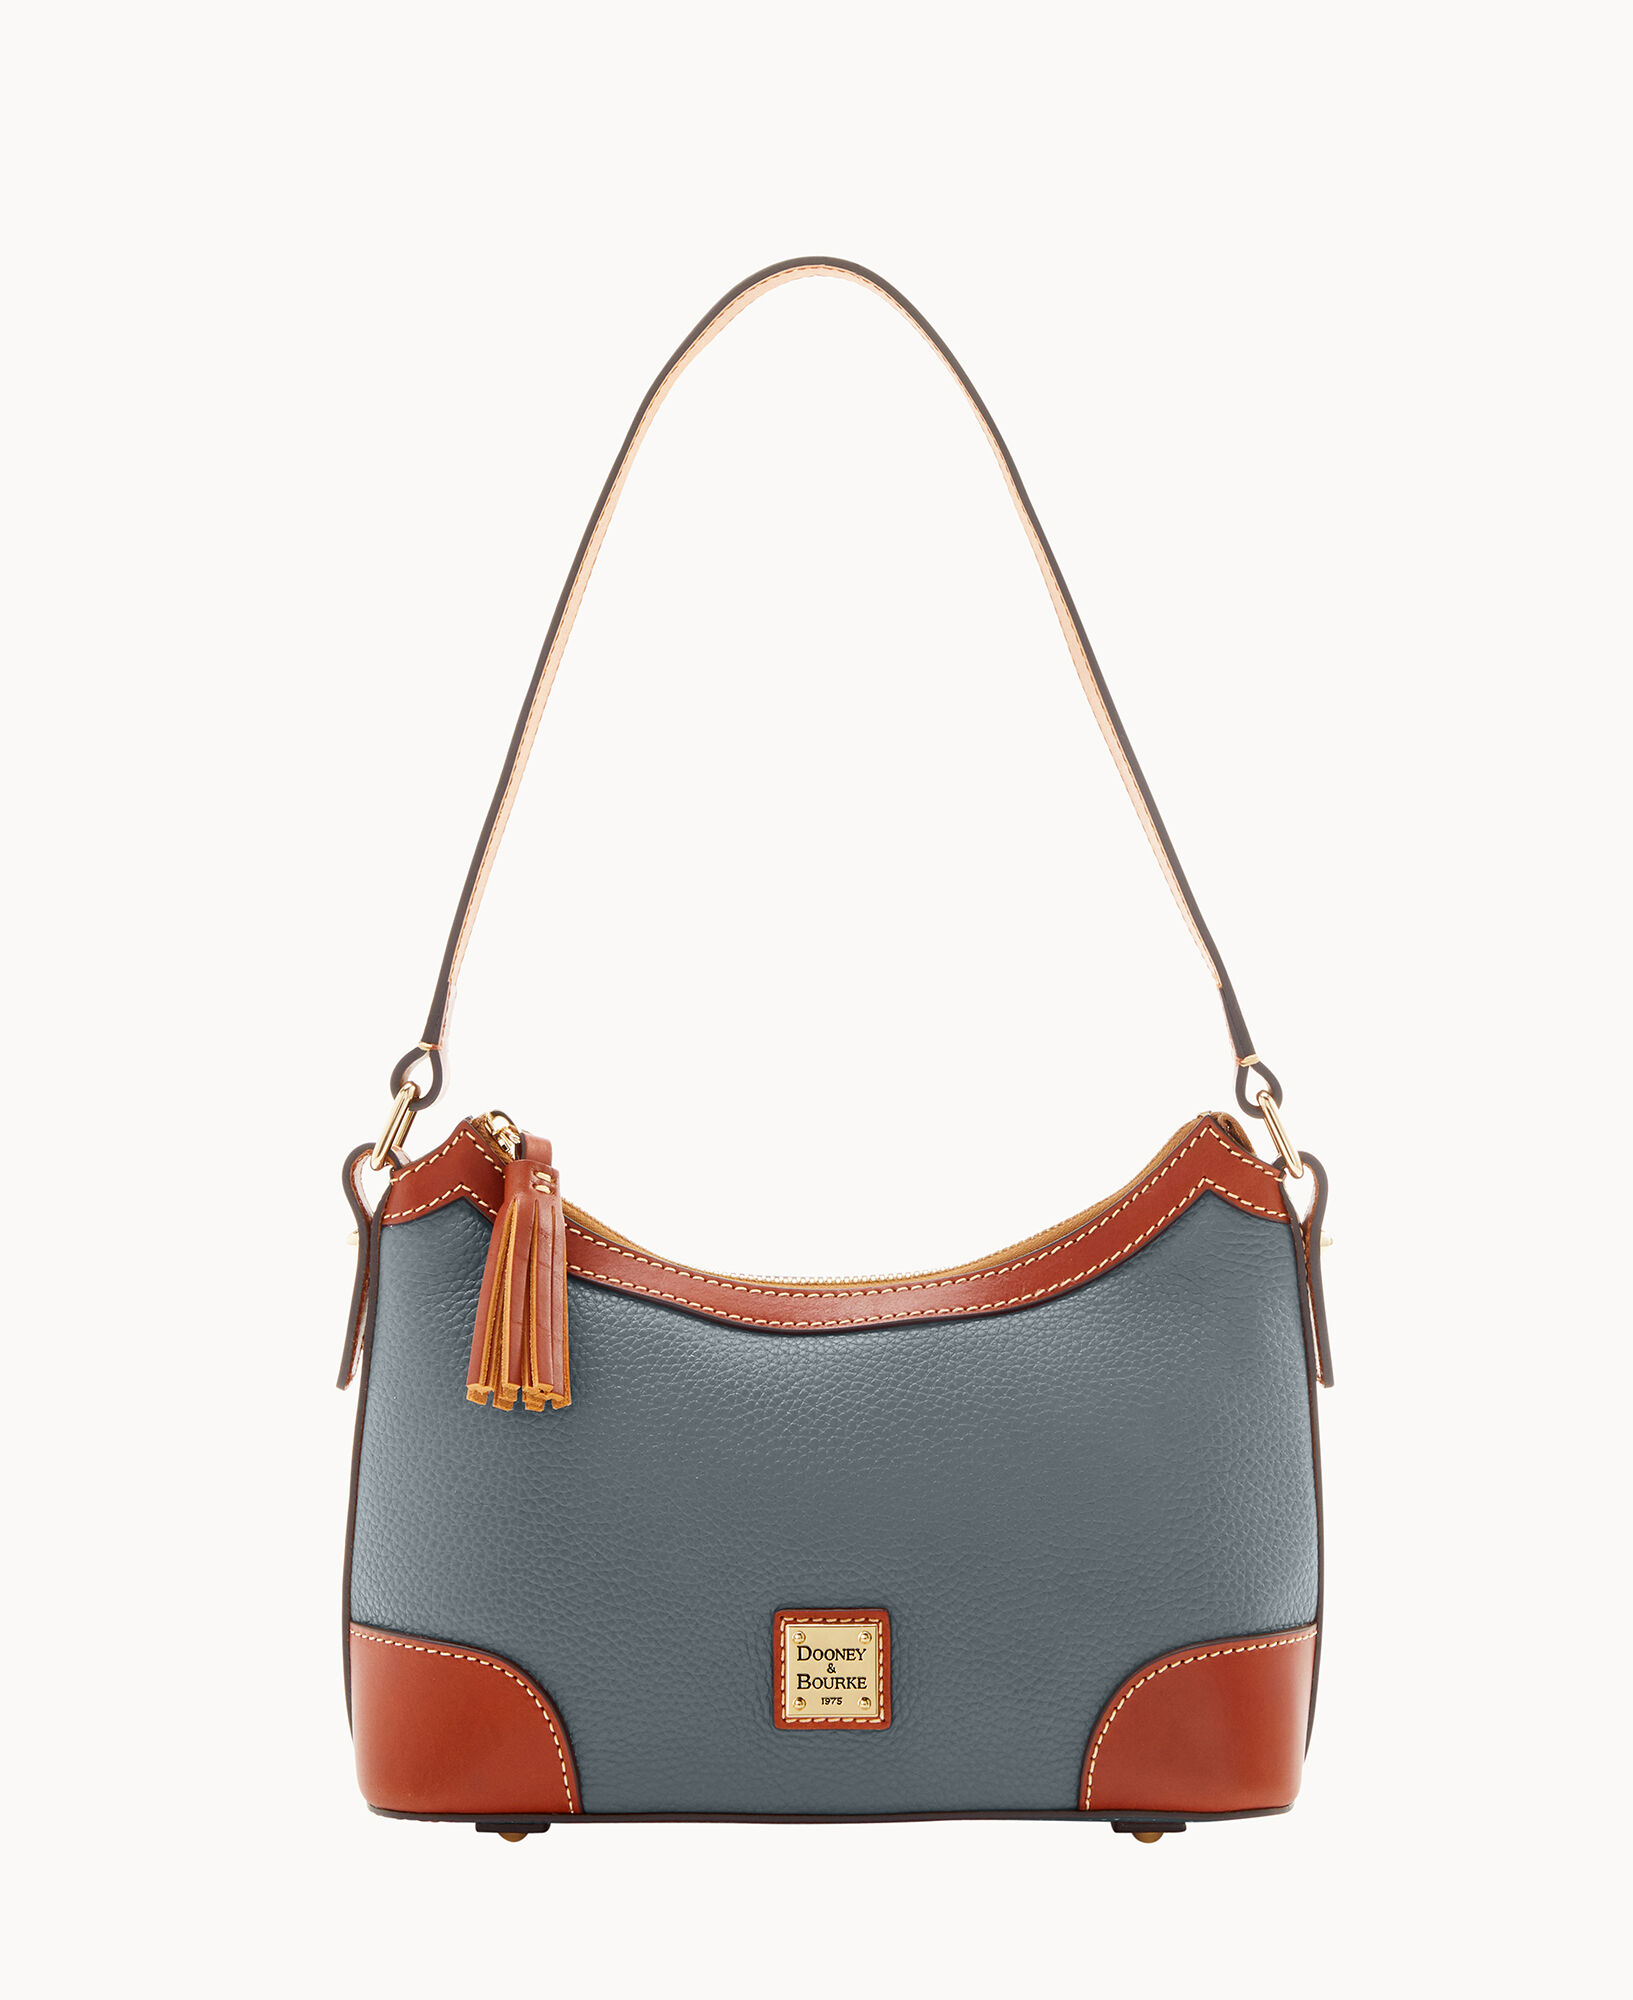 Dooney and Bourke Handbags - Leather Blue Shoulder Hobo Bag